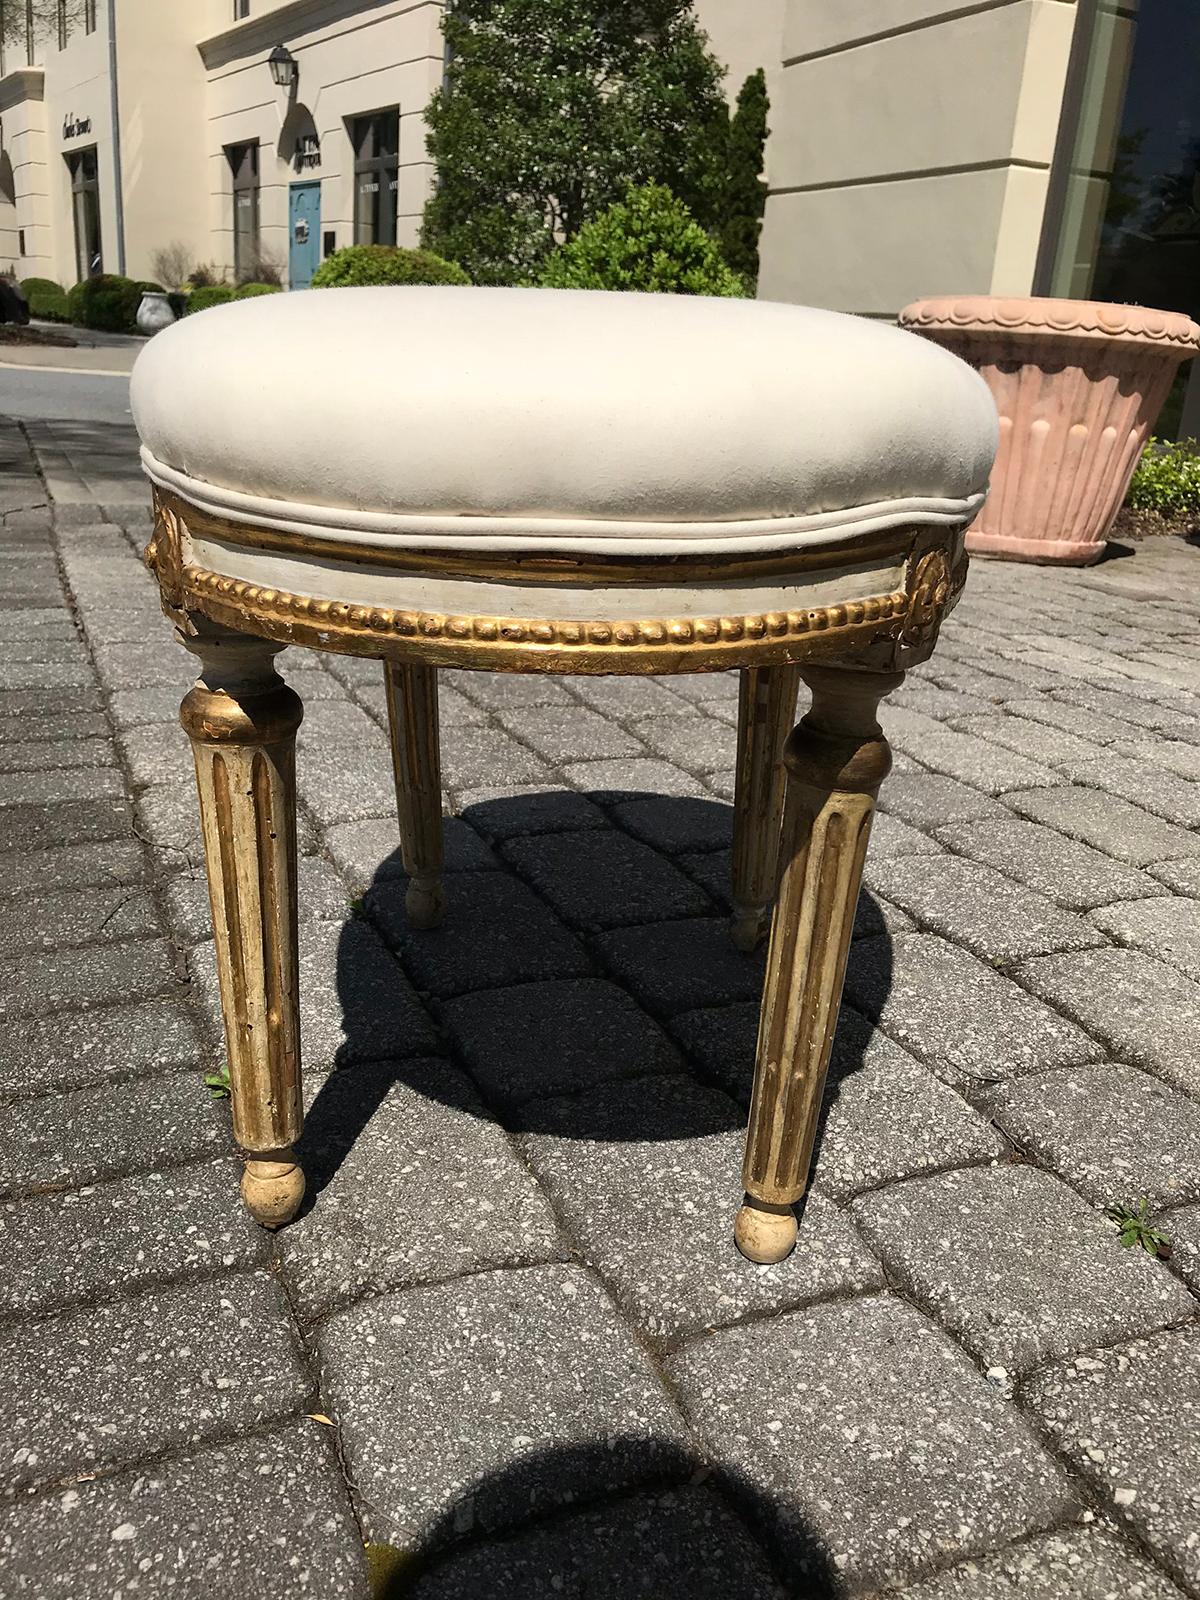 20th century Louis XVI style Italian oval stool.